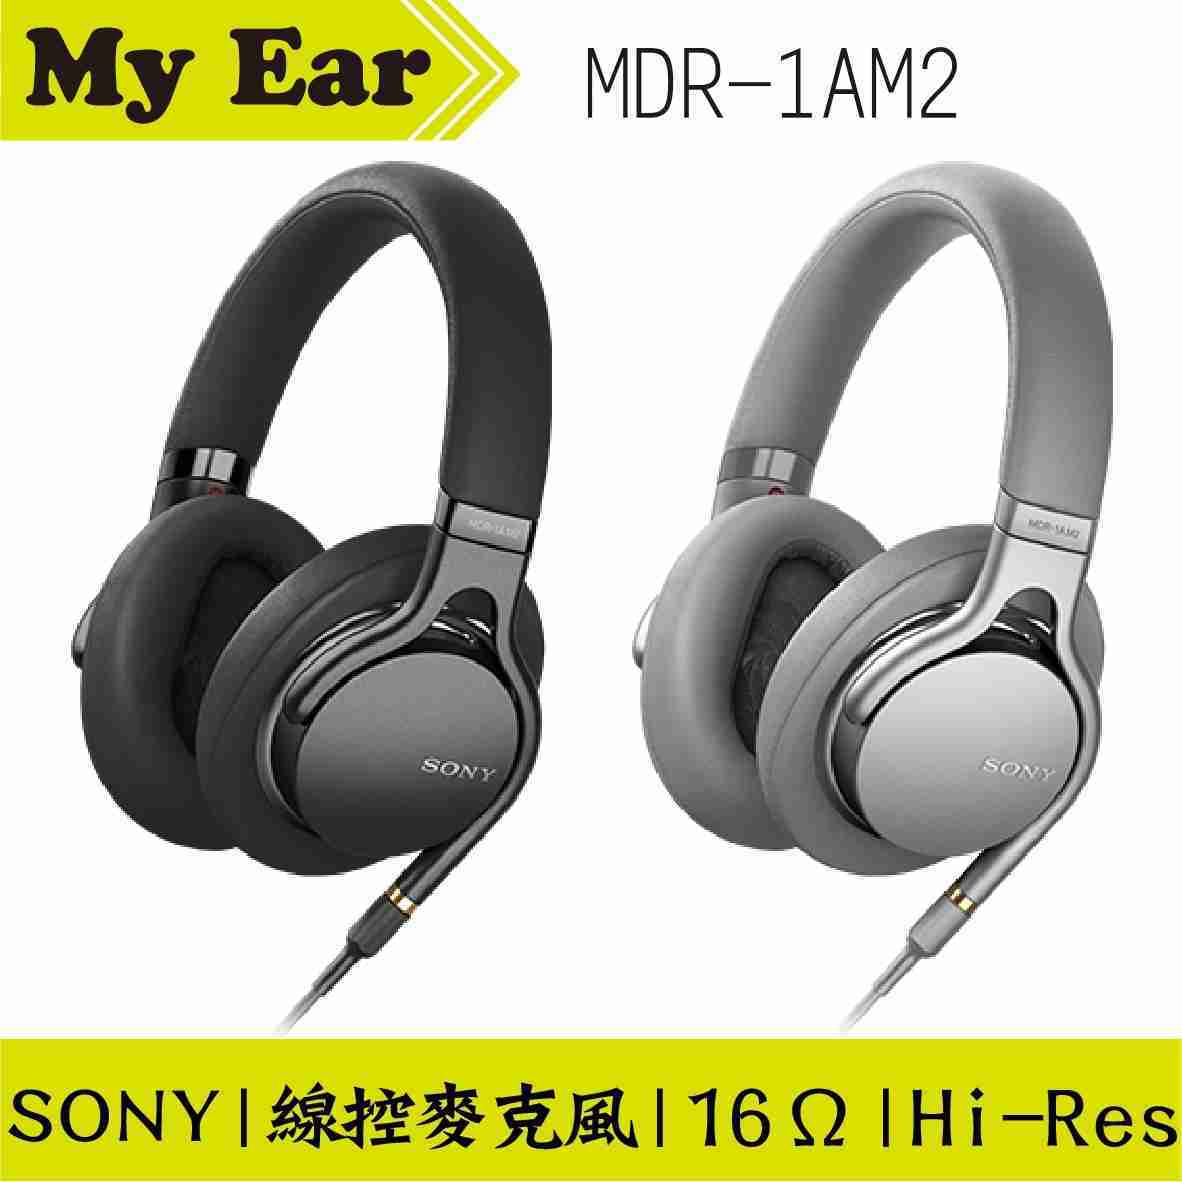 SONY MDR-1AM2 耳罩式 耳機 雙色 高音質 | My Ear耳機專門店